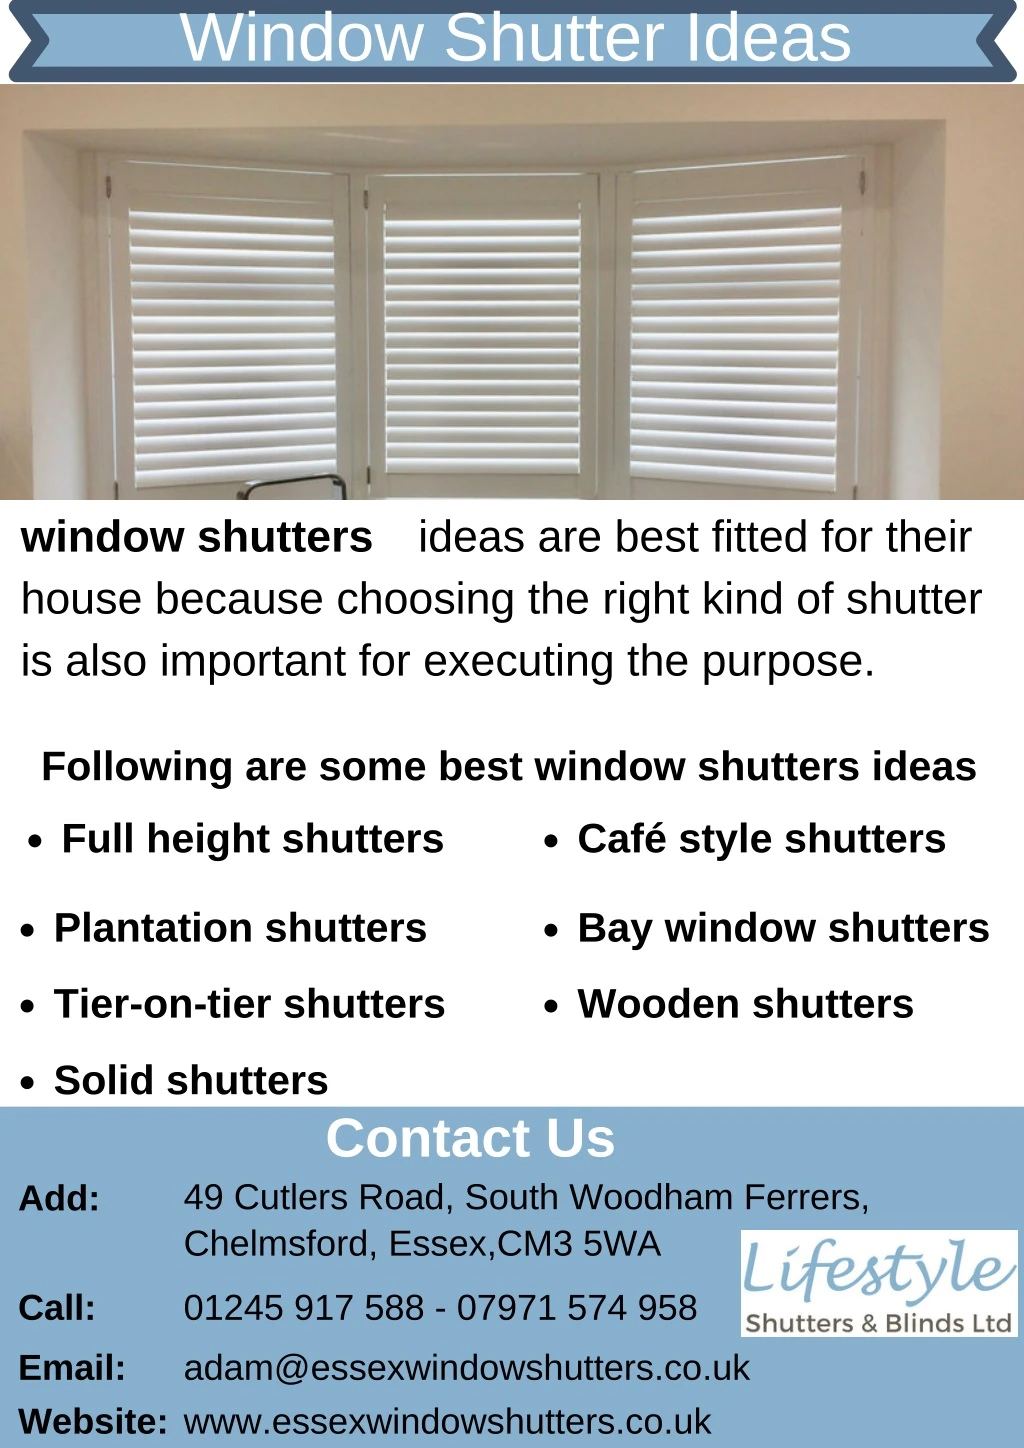 window shutter ideas